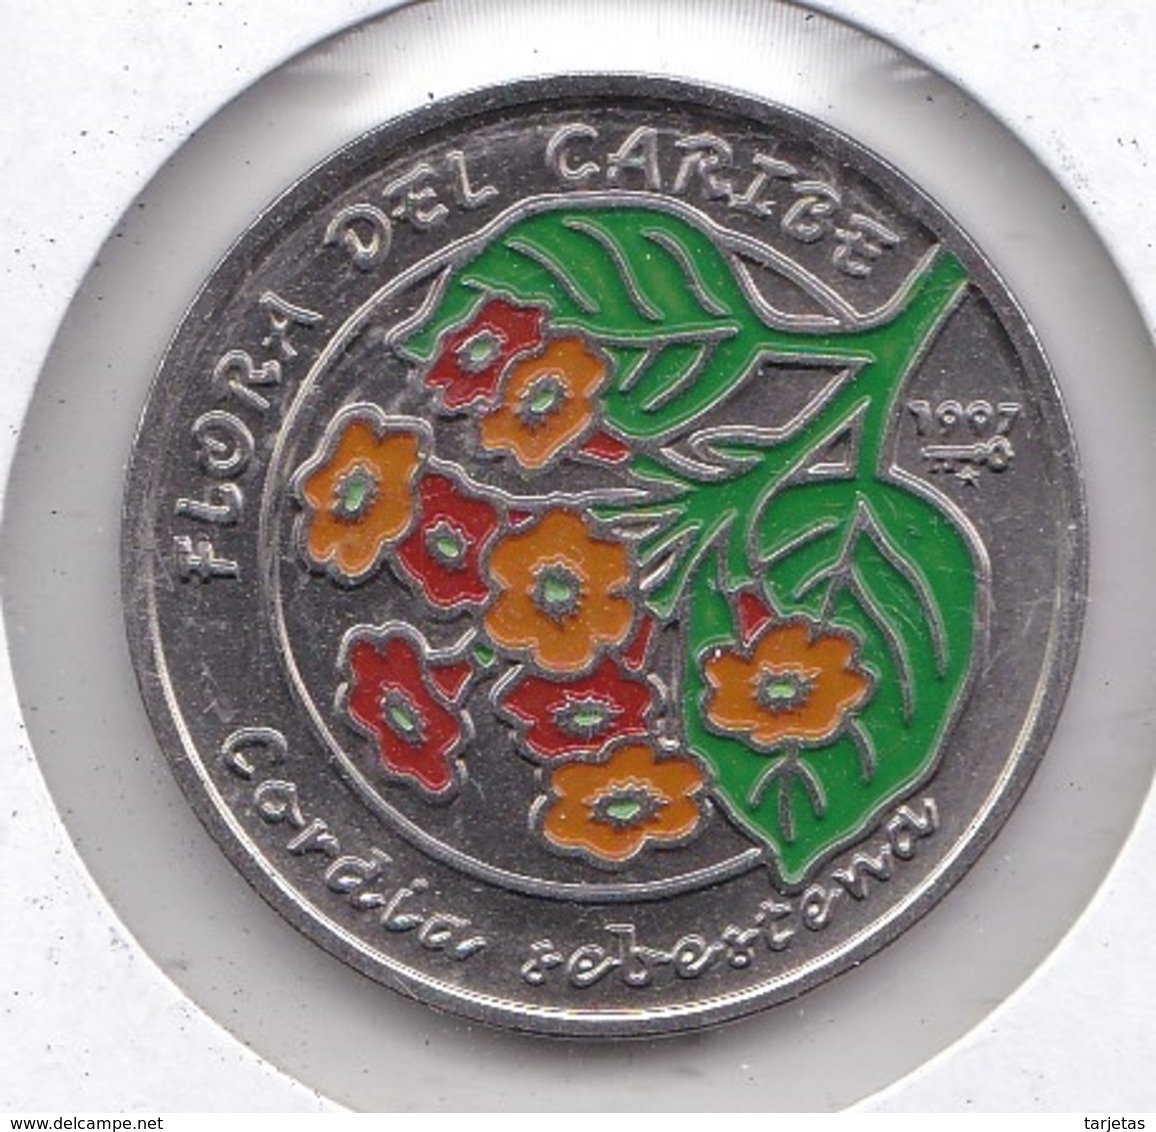 MONEDA DE CUBA DE 1 PESO DEL AÑO 1997 FLORA CARIBE - FLOR-FLOWER (COIN) NUEVA-MINT - Cuba